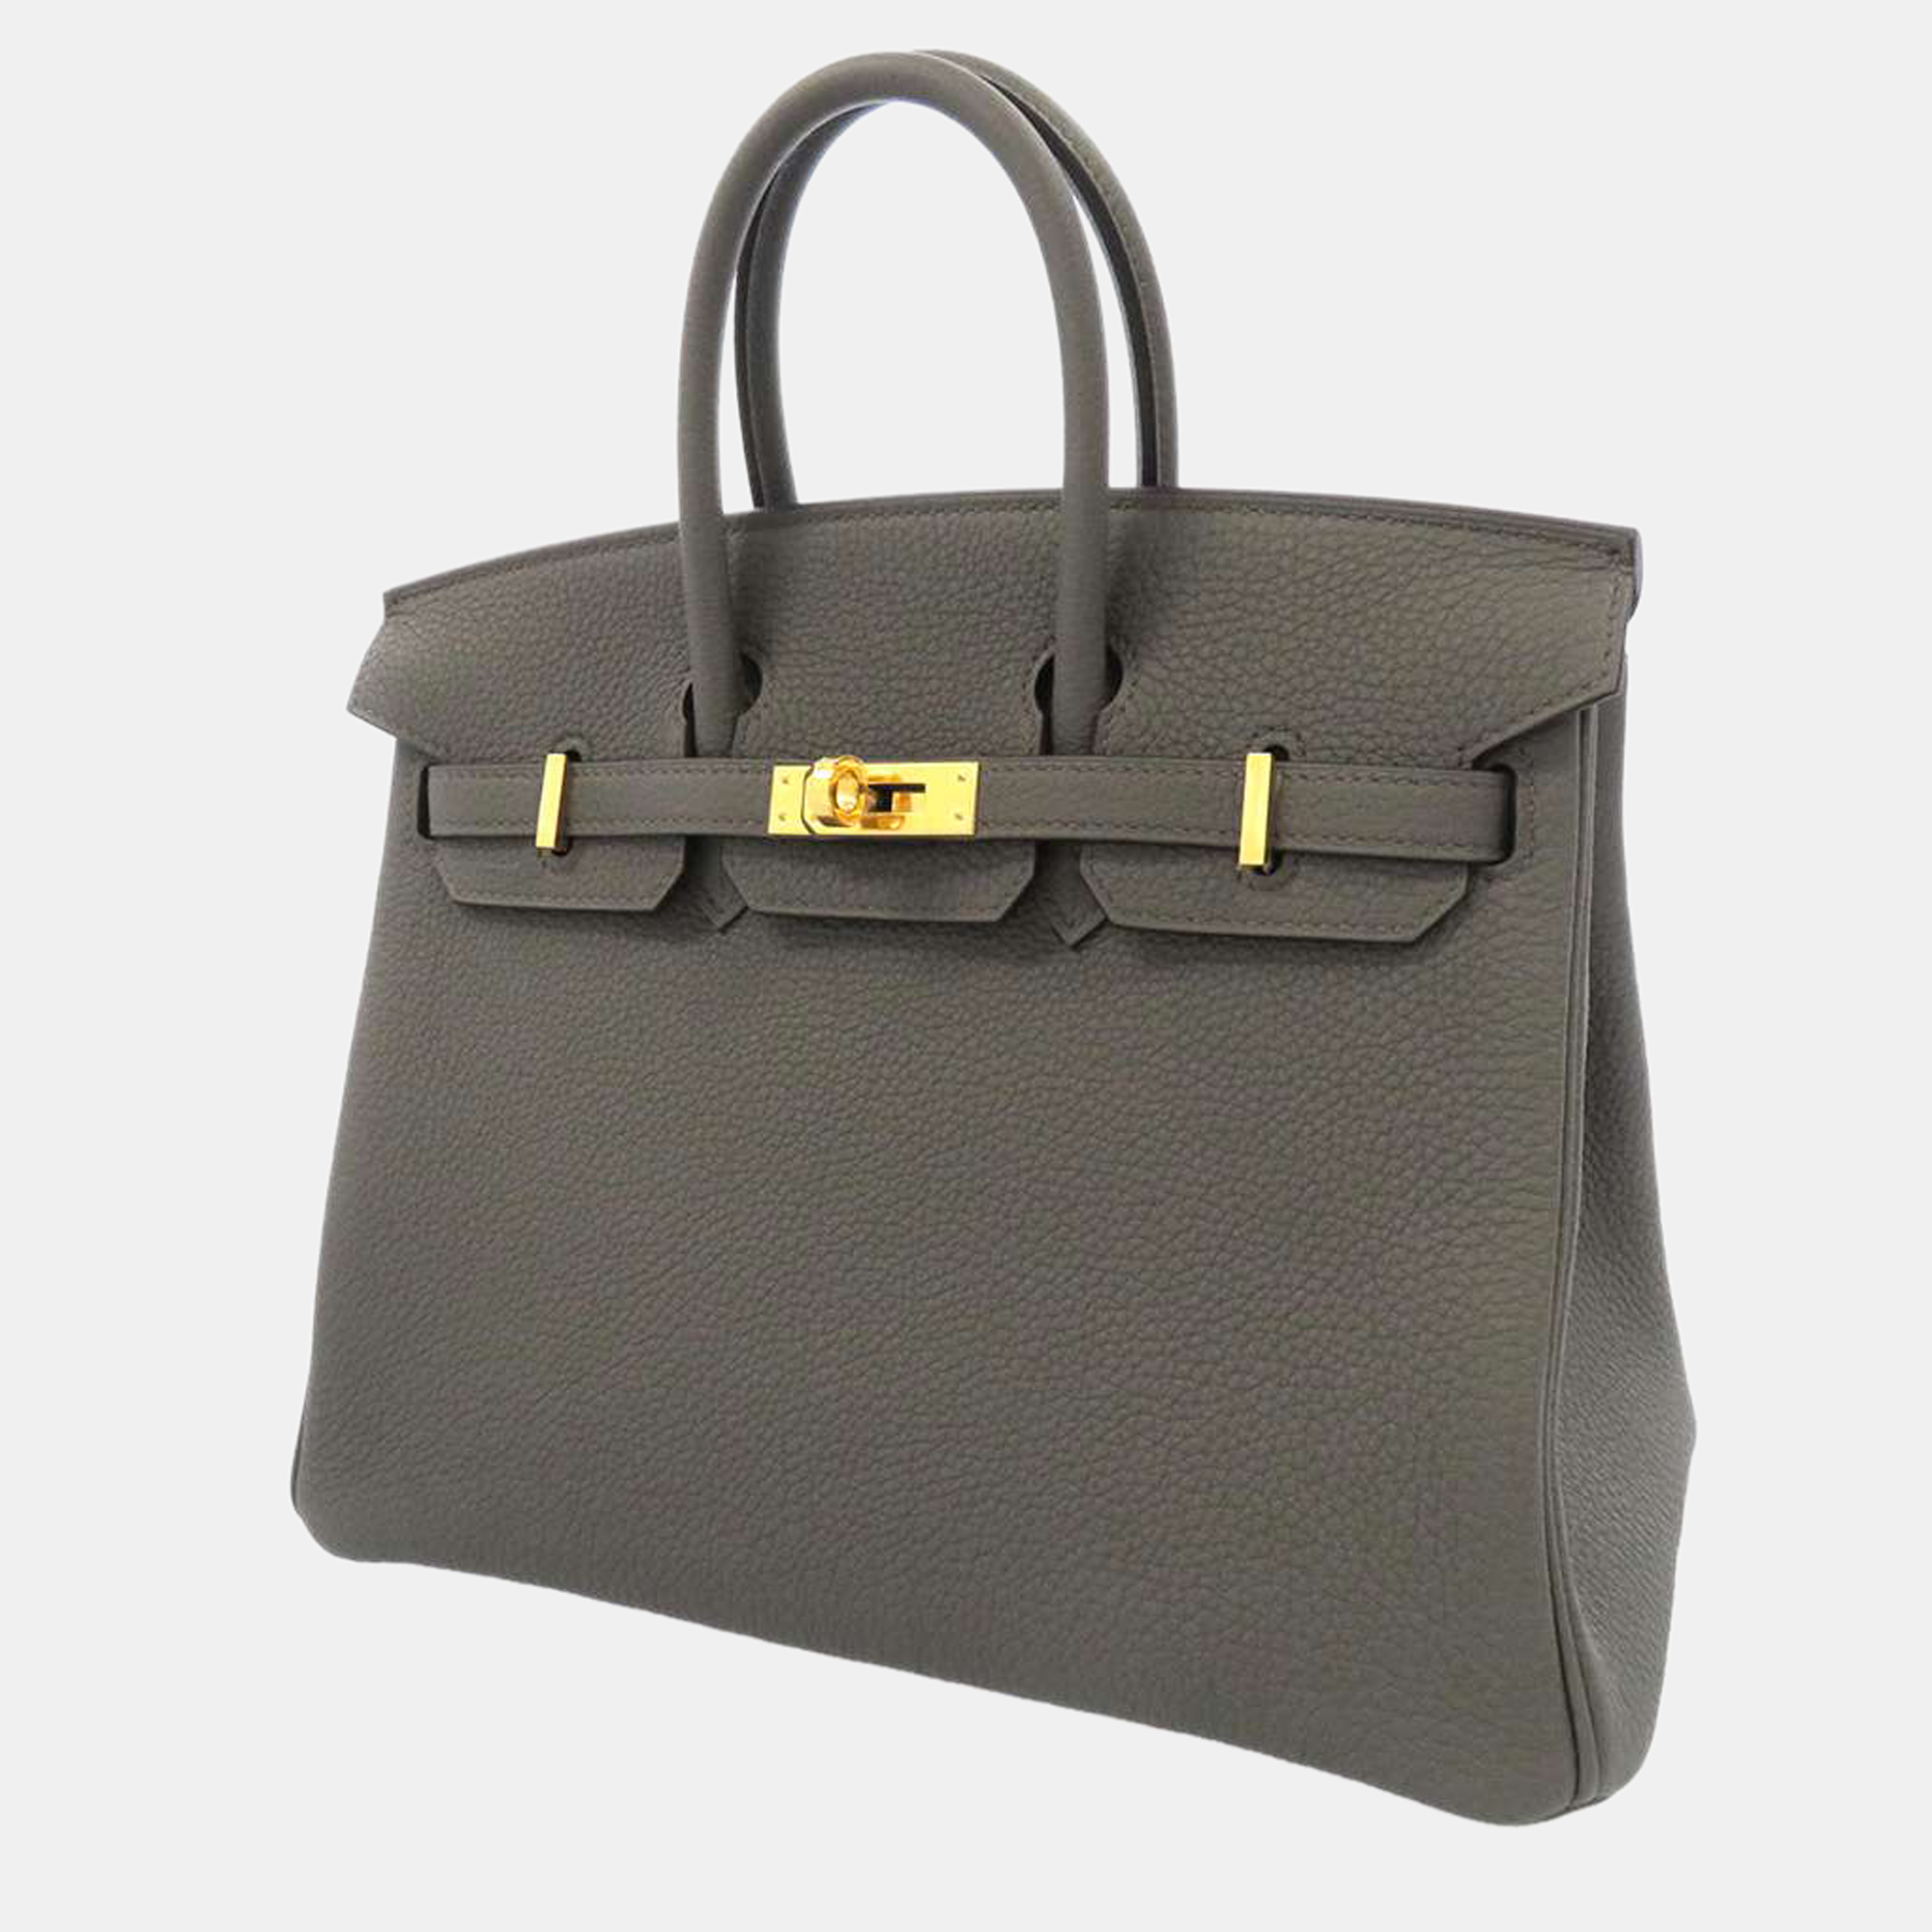 Pre-owned Hermes Grey Togo Leather Gold Hardware Birkin 25 Bag